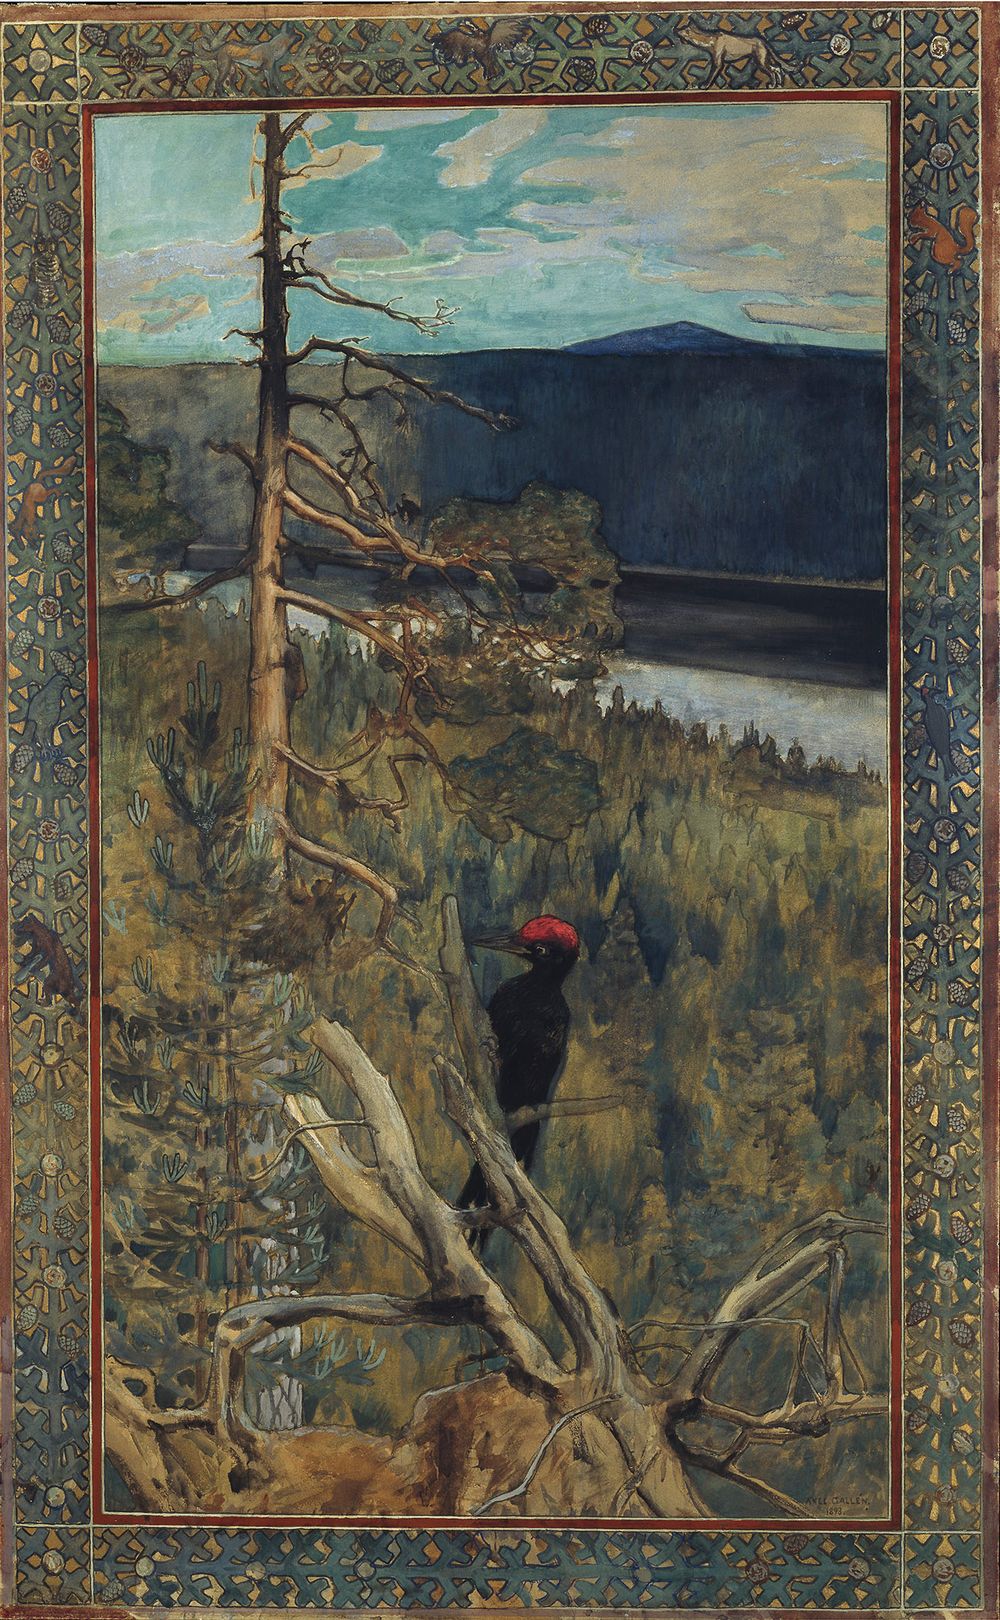 The Great Black Woodpecker by Akseli Gallen-Kallela - 1893 - 145 x 90 cm Finnish National Gallery